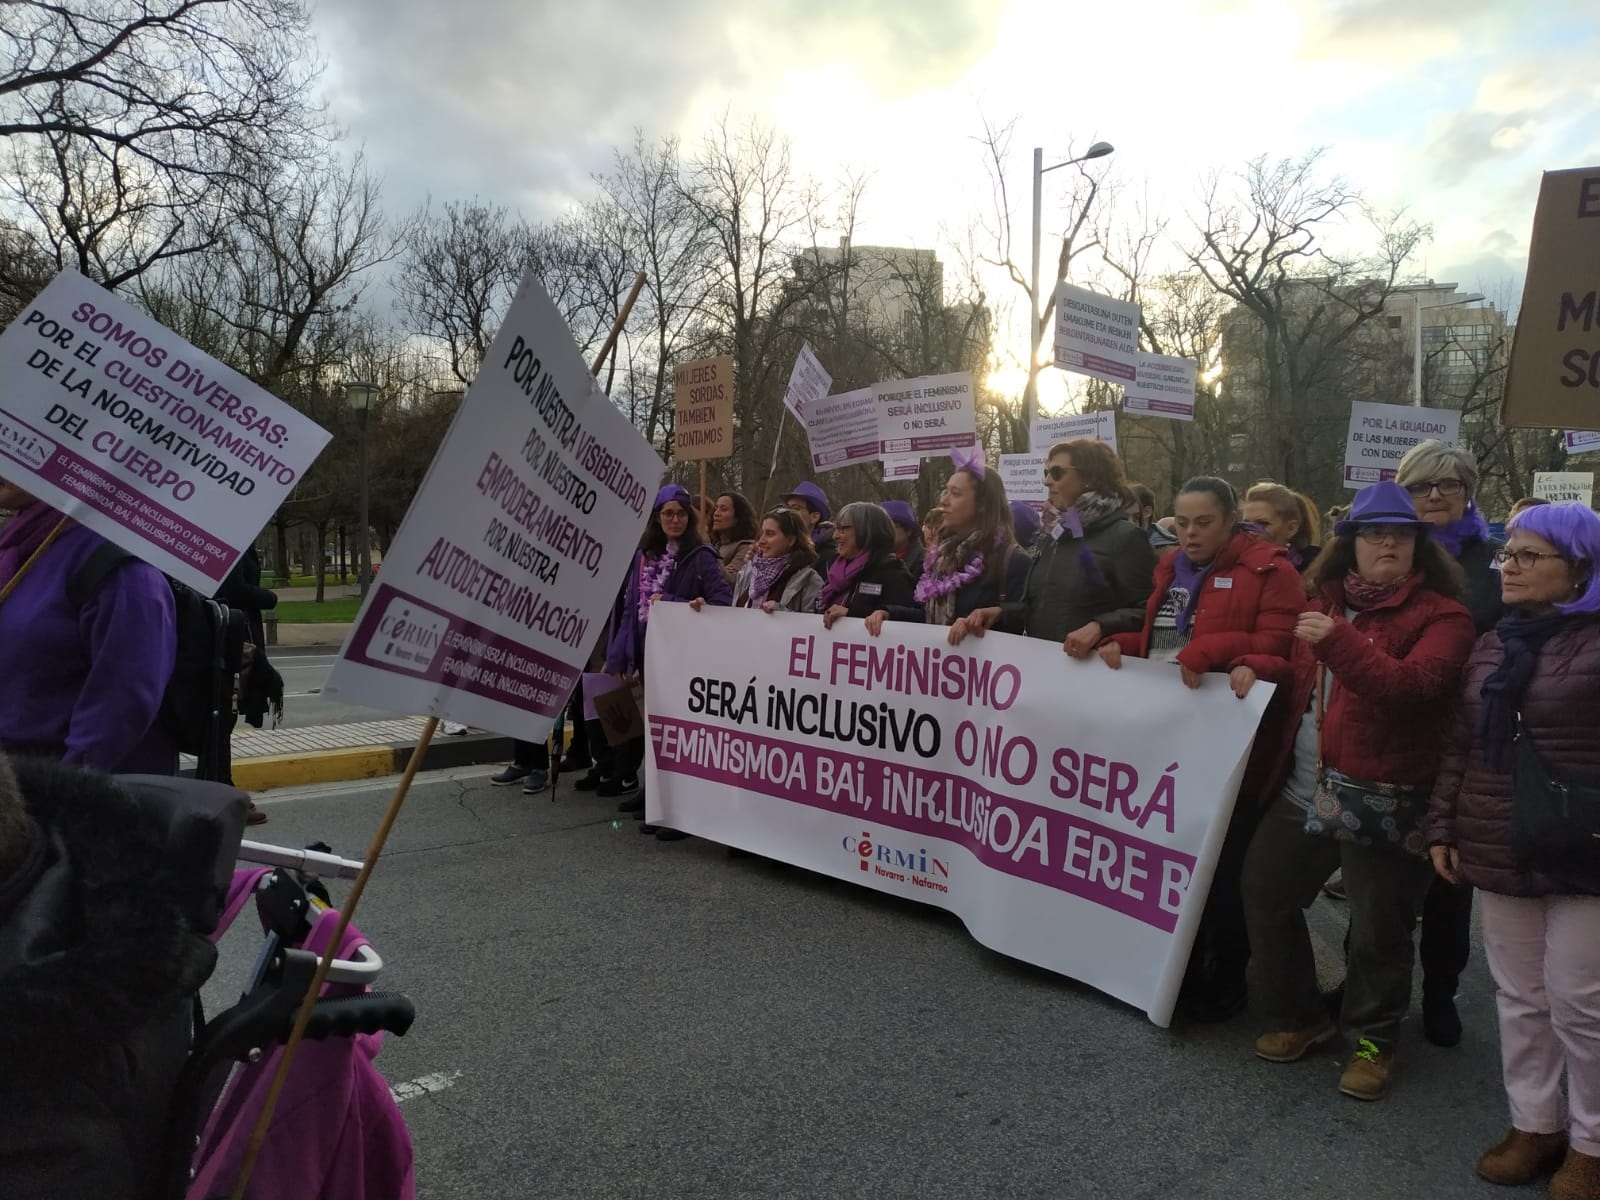 pancarta con el texto "El feminismo será inclusivo o no será" y portando la pancarta varias mujeres con discapacidad